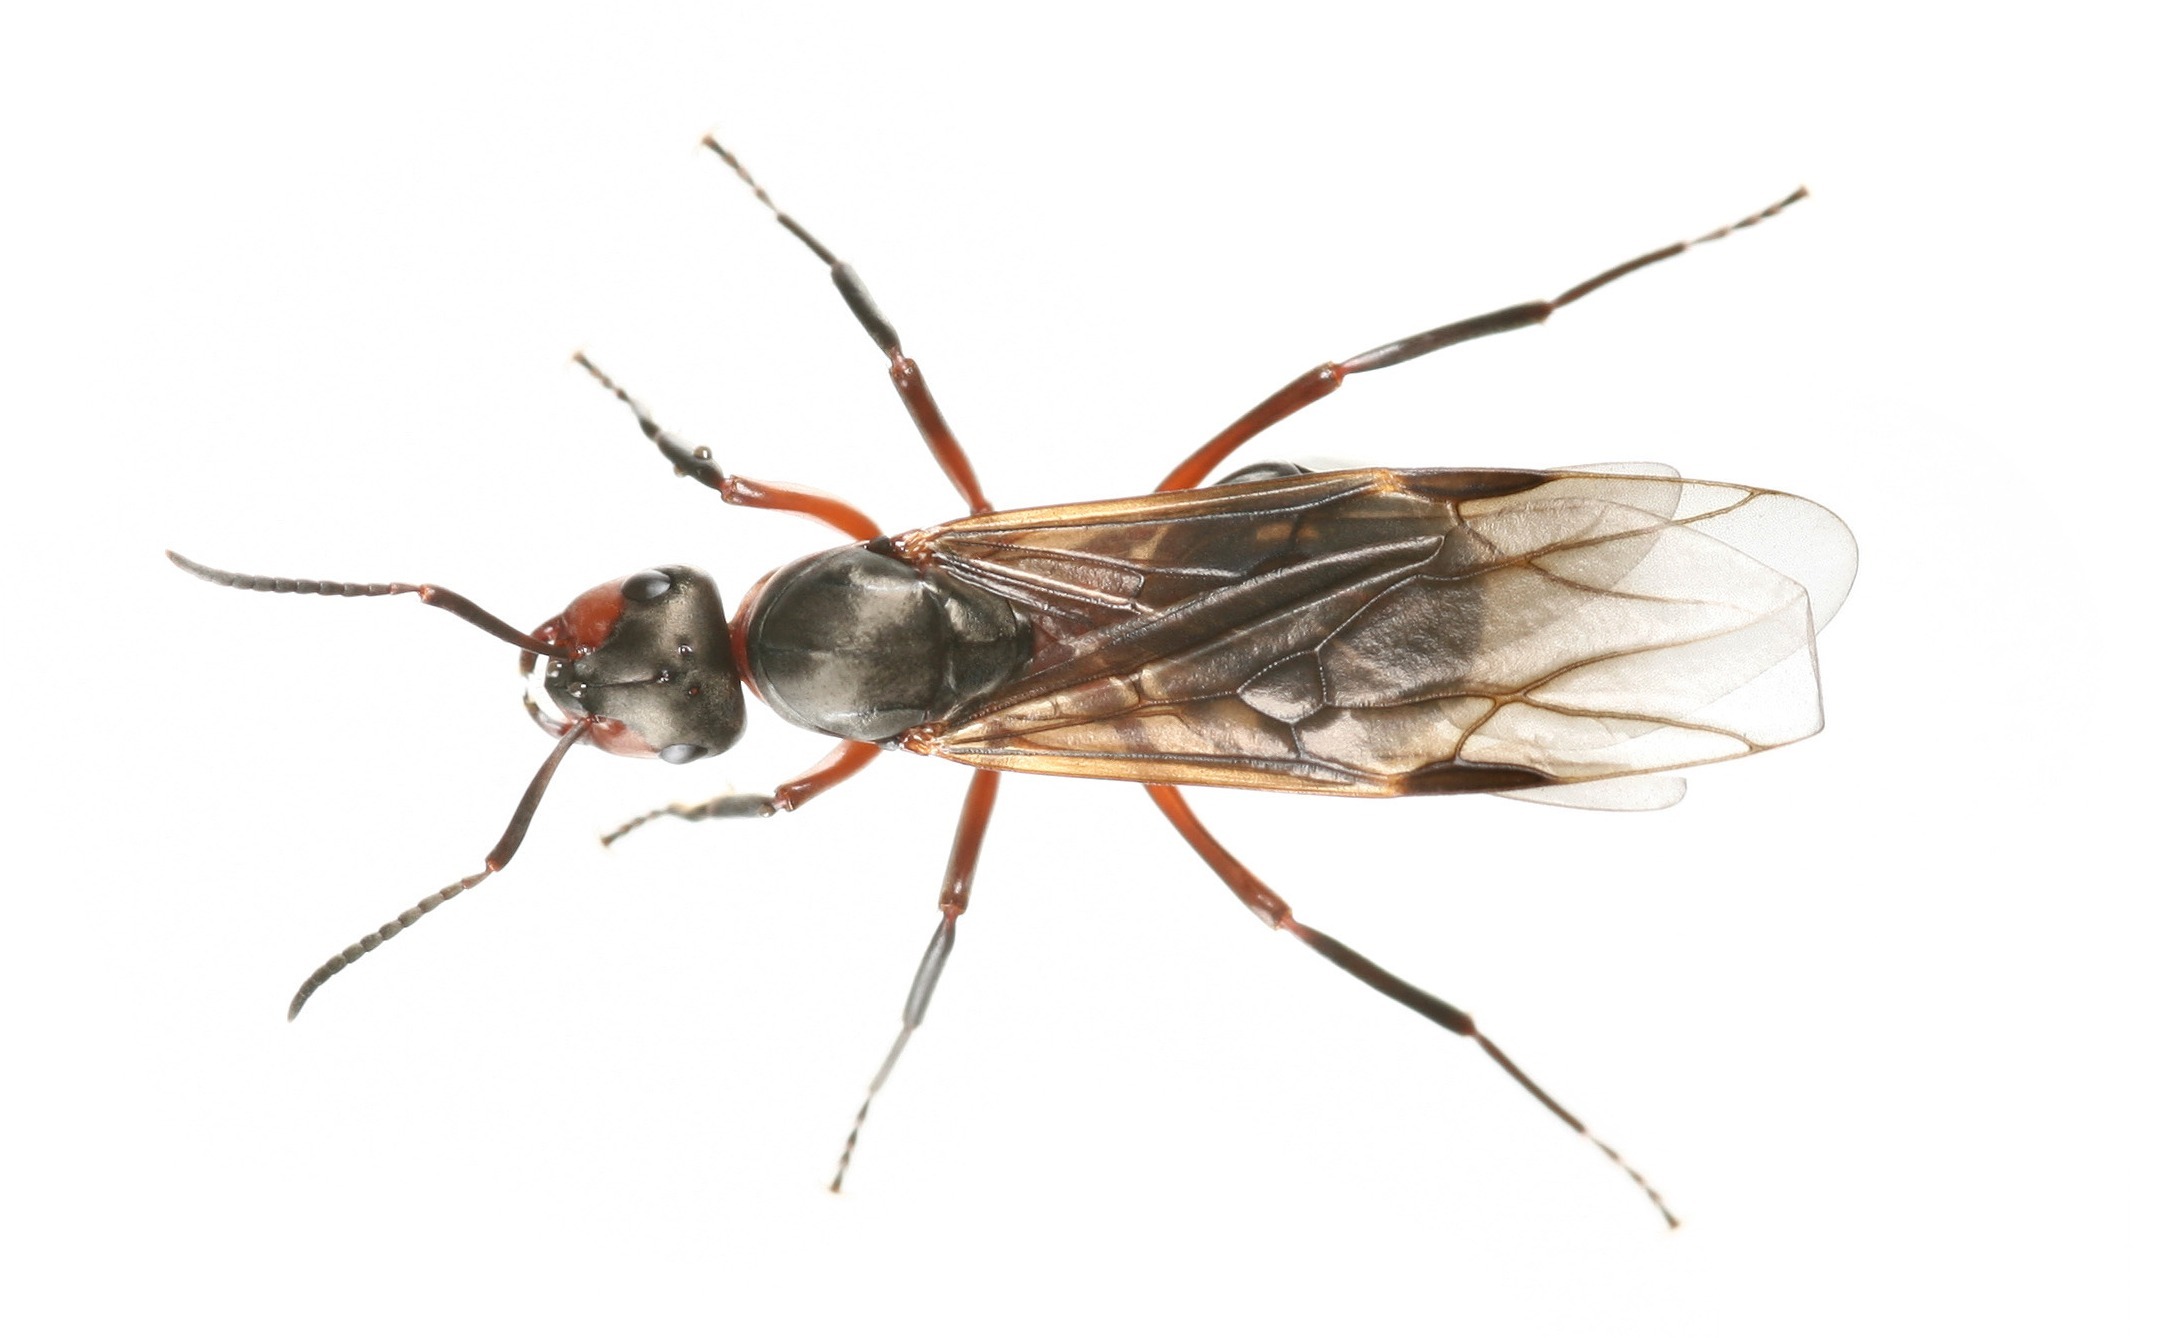 Fliegende Ameisen sind nicht gefährlich und beißen nicht, können aber unangenehm sein